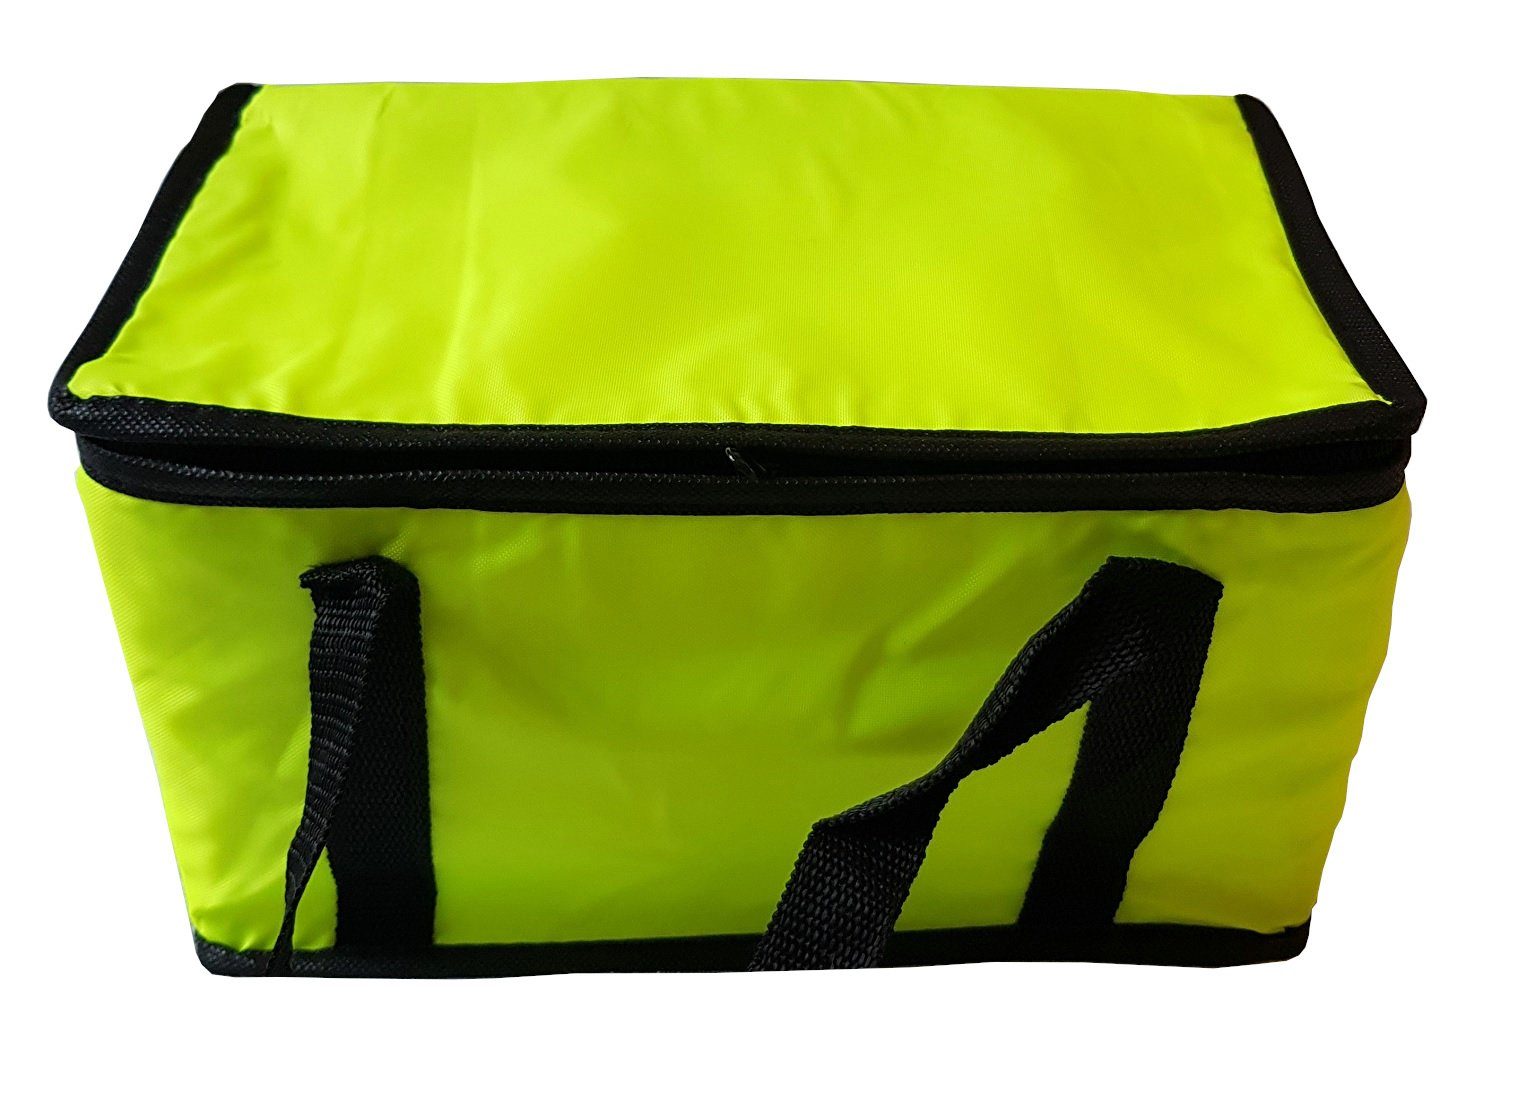 Einkaufstasche Provance Gelb Picknicktasche Kühltasche Isoliertasche 9,5L Kühlbox Kühltasche